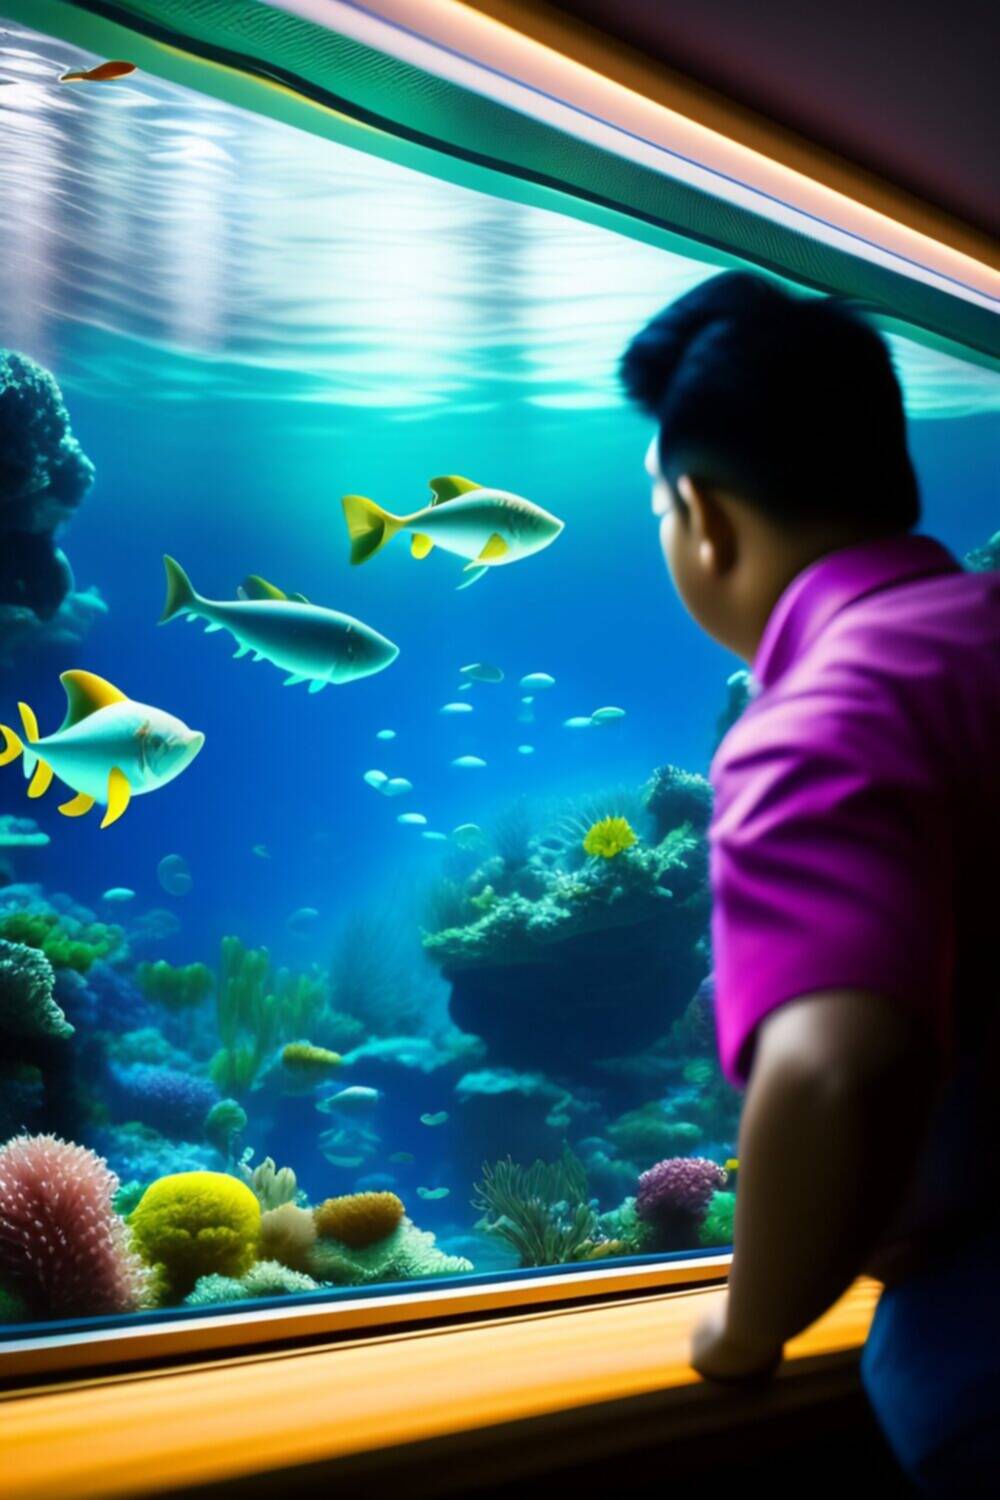 The world's largest aquarium is the Georgia Aquarium in Atlanta, USA, with over 100,000 aquatic animals